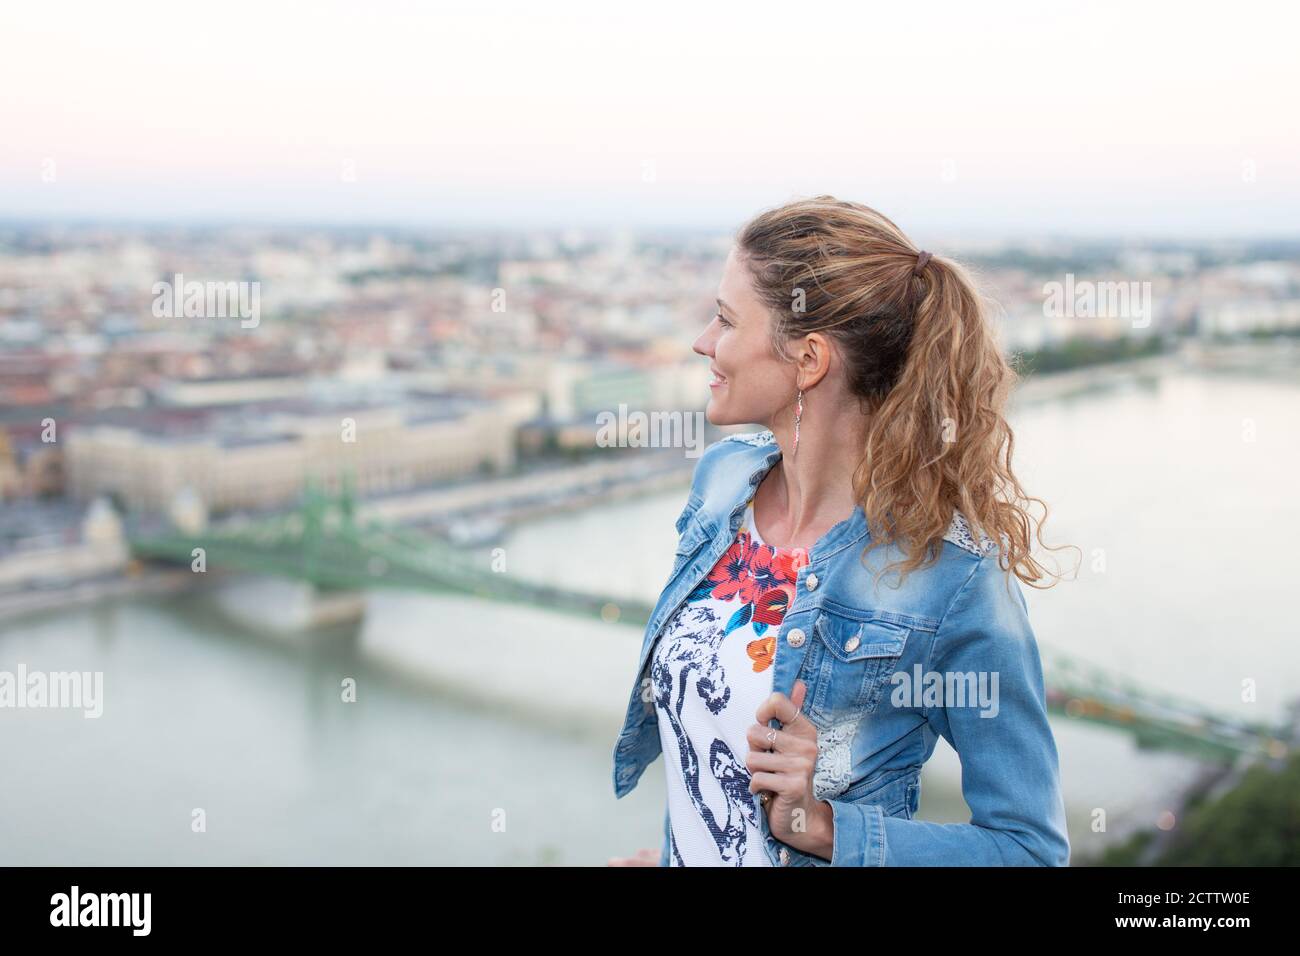 Bonne jeune touriste se demandant à Budapest, Hongrie Banque D'Images